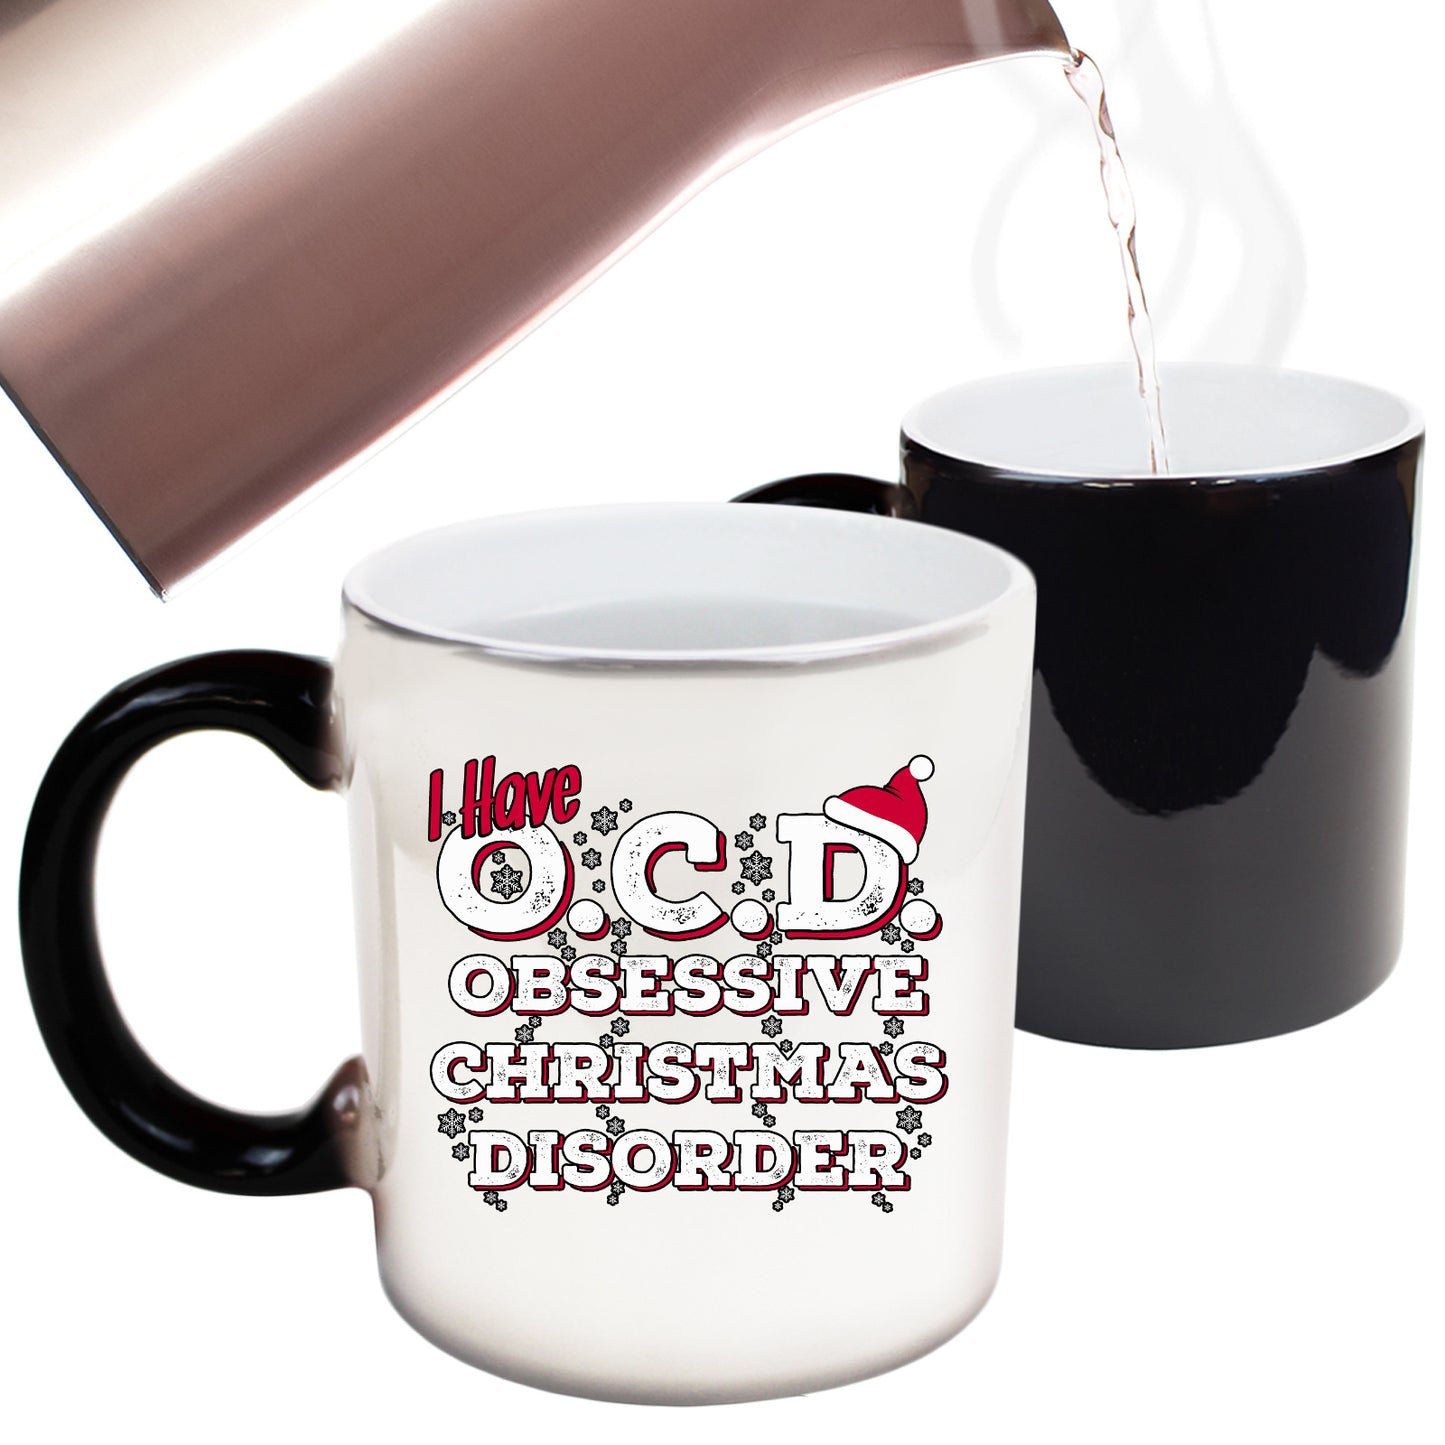 The Christmas Hub - Christmas I Have Ocd Obsessive Christmas Disorder - Funny Colour Changing Mug